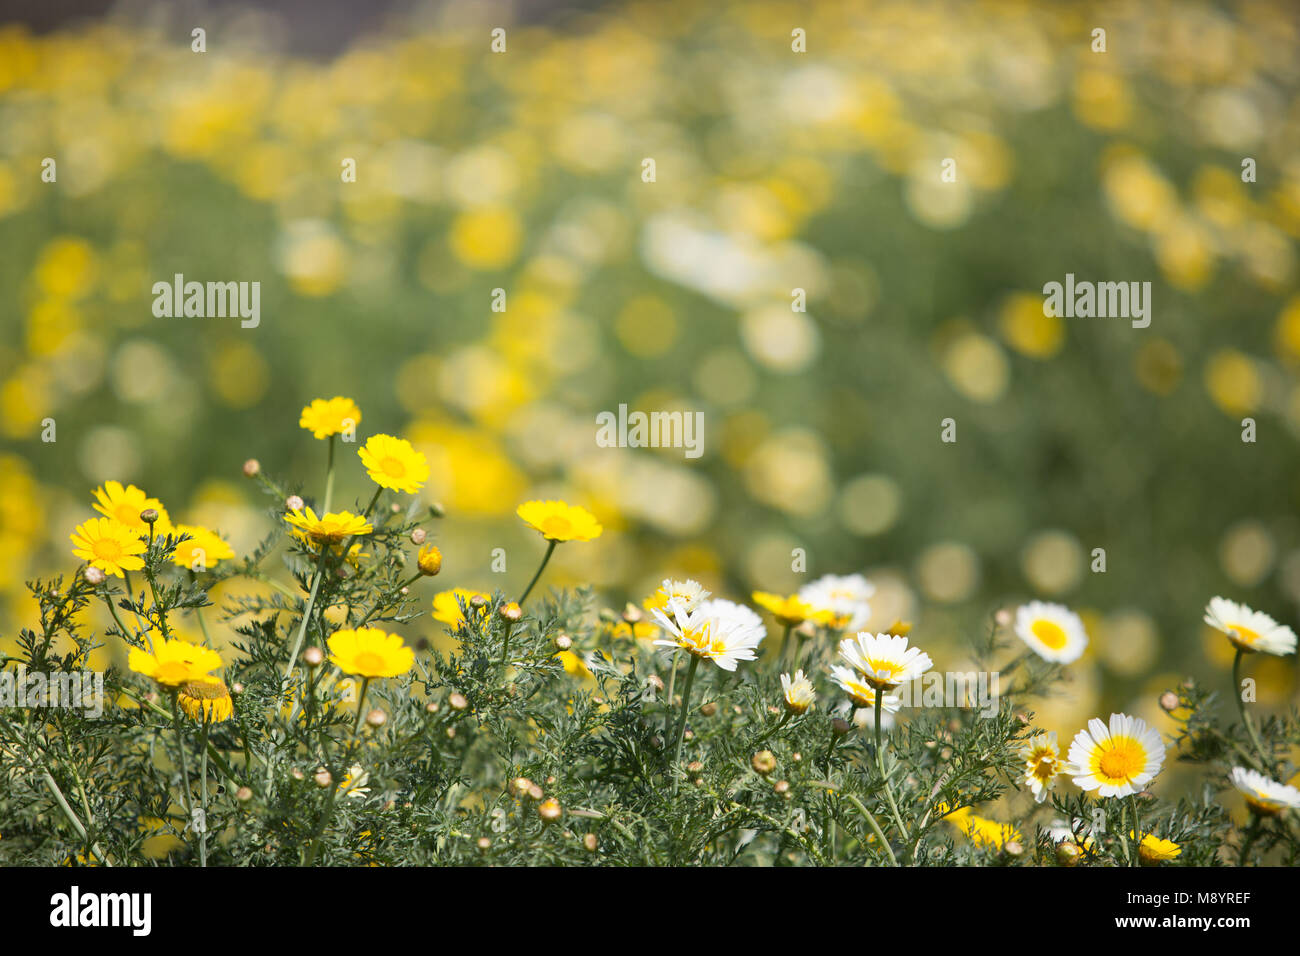 Giallo e Bianco daisy selvaggio fiore con blur blackground, può utilizzare come sfondo Foto Stock